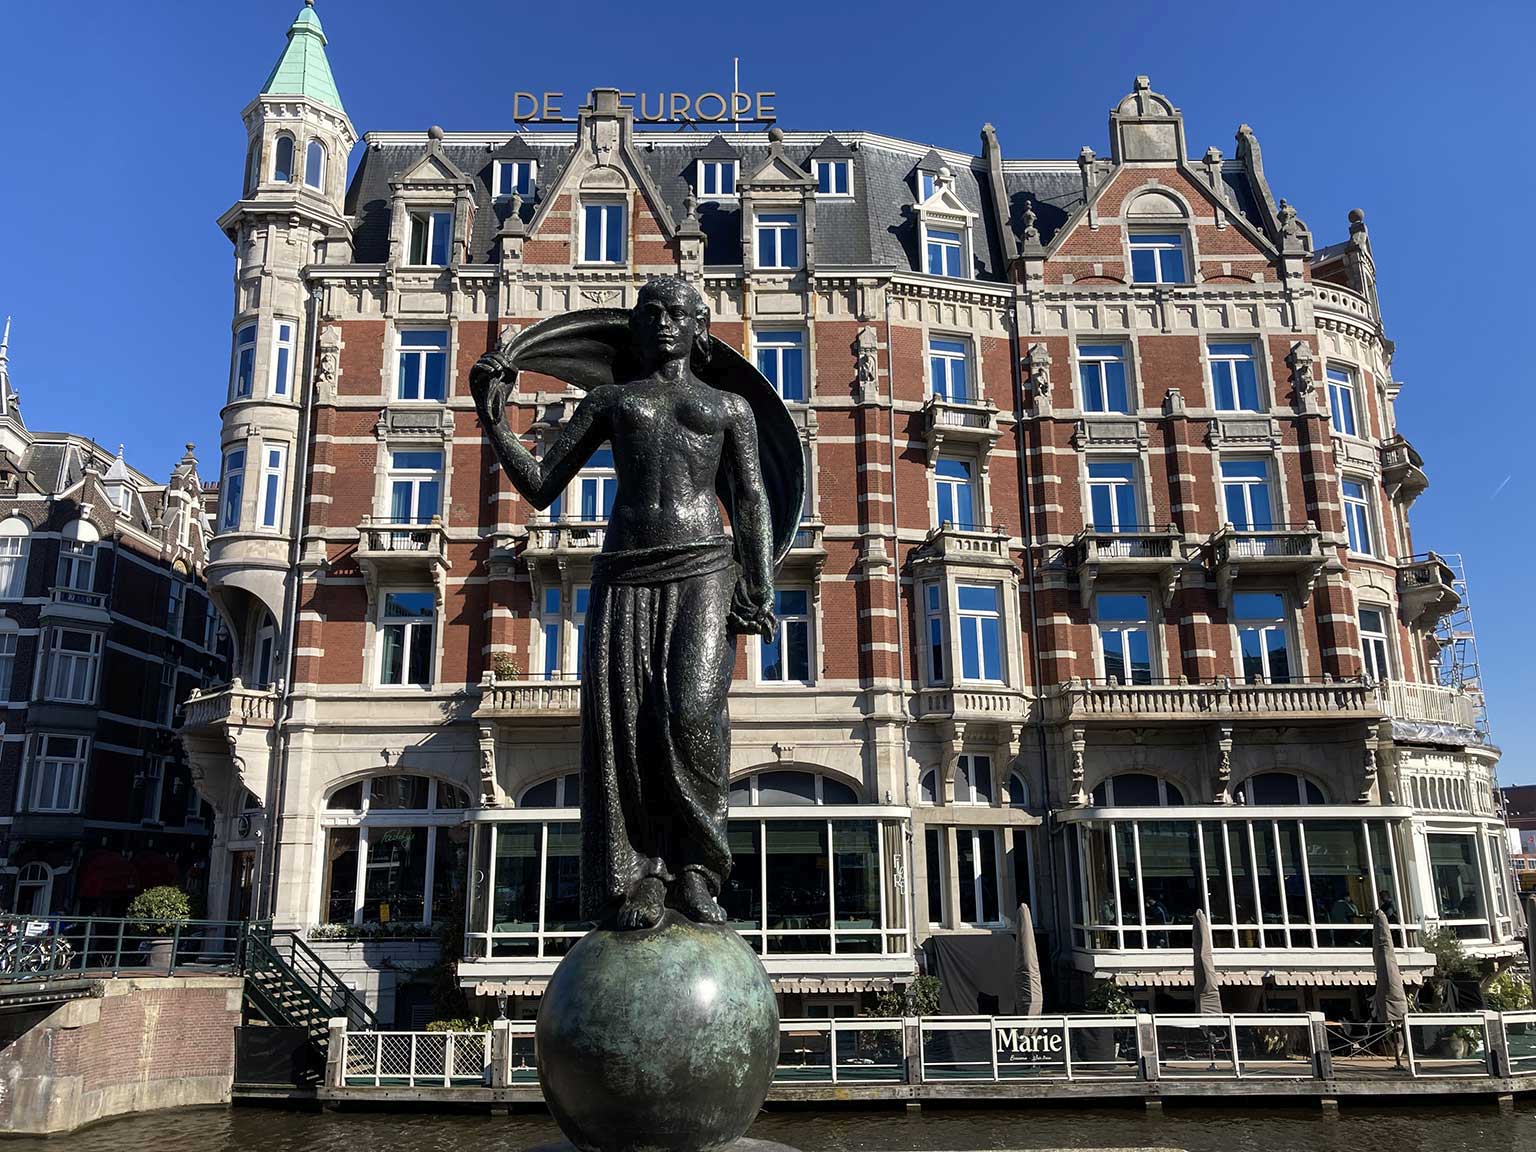 De L'Europe, Amsterdam, gezien vanaf het Muntplein, met ervoor beeld Fortuna door Hildo Krop